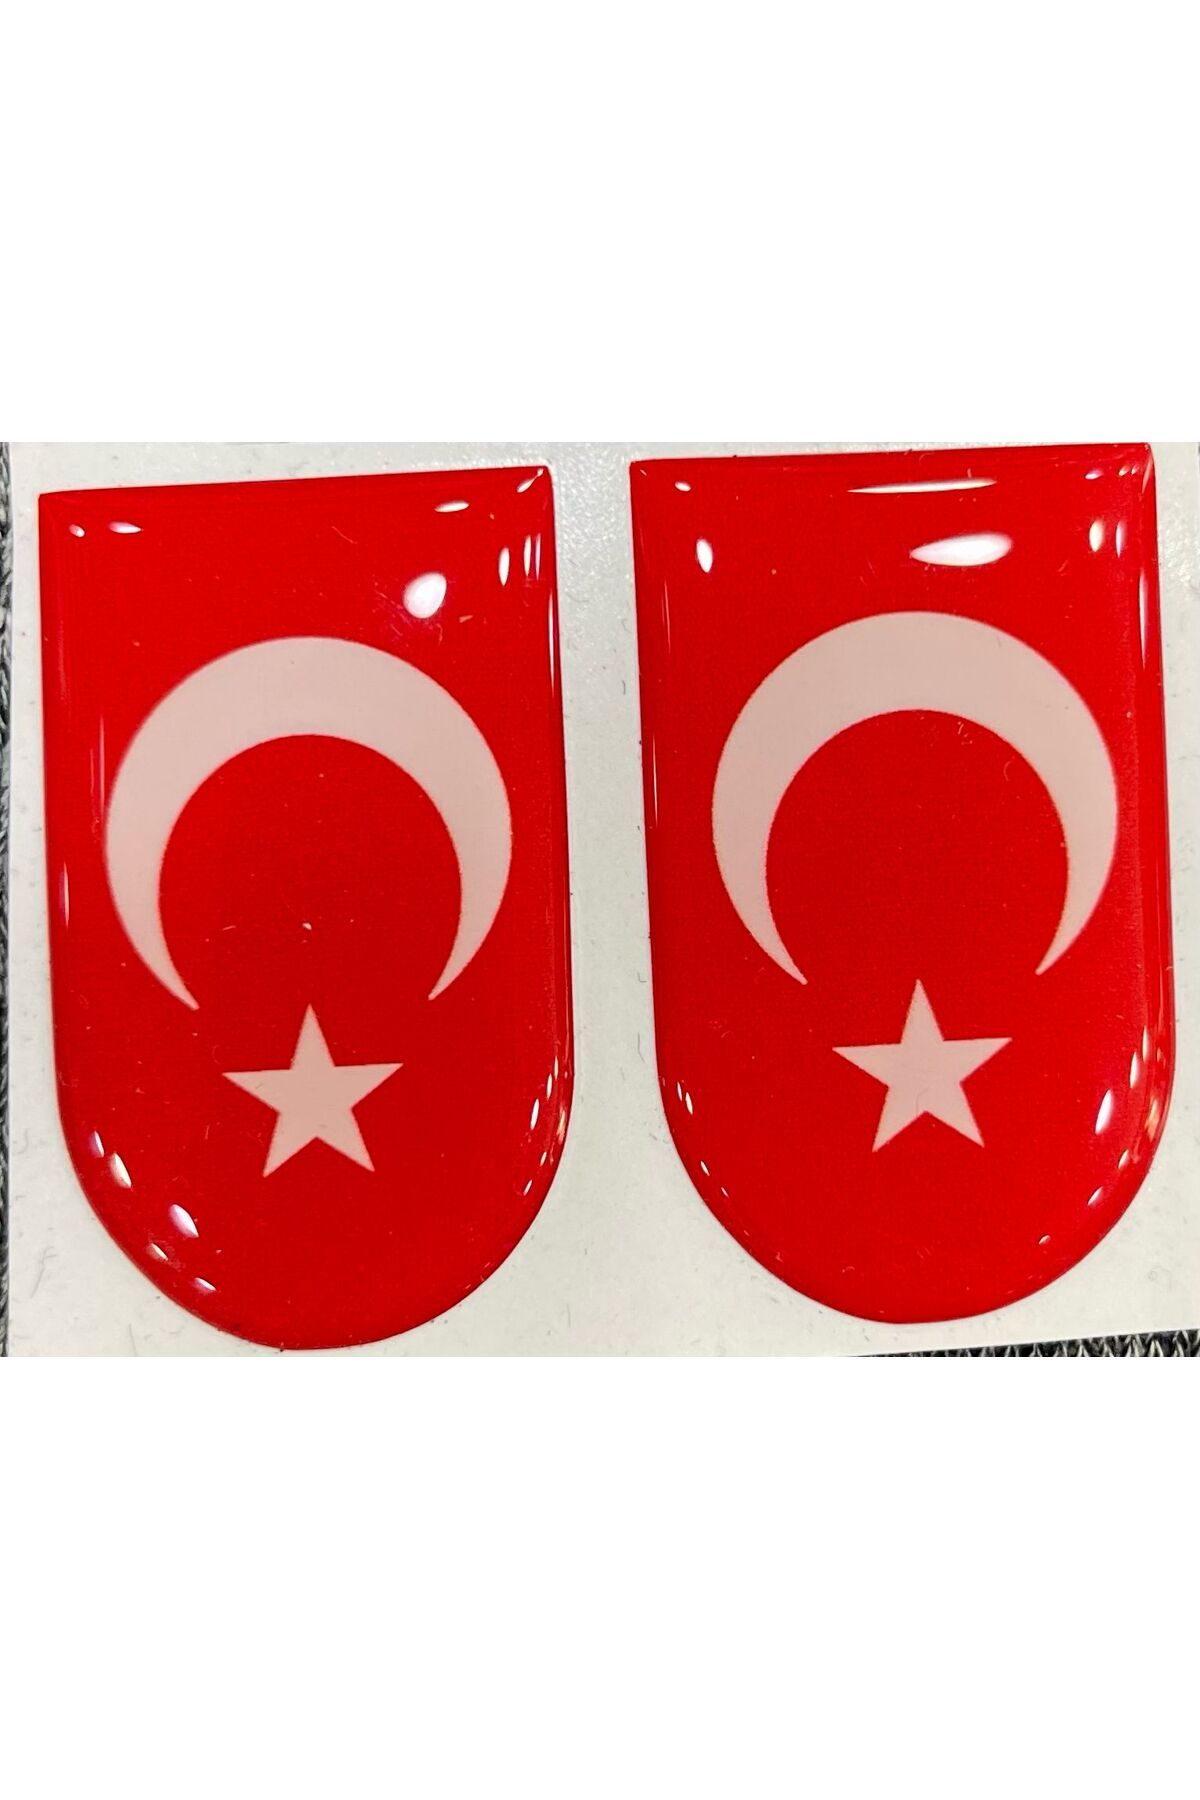 bahadırsilahcılık Türk Bayrak Şarjör Altı Sticker ( 2 ADET )